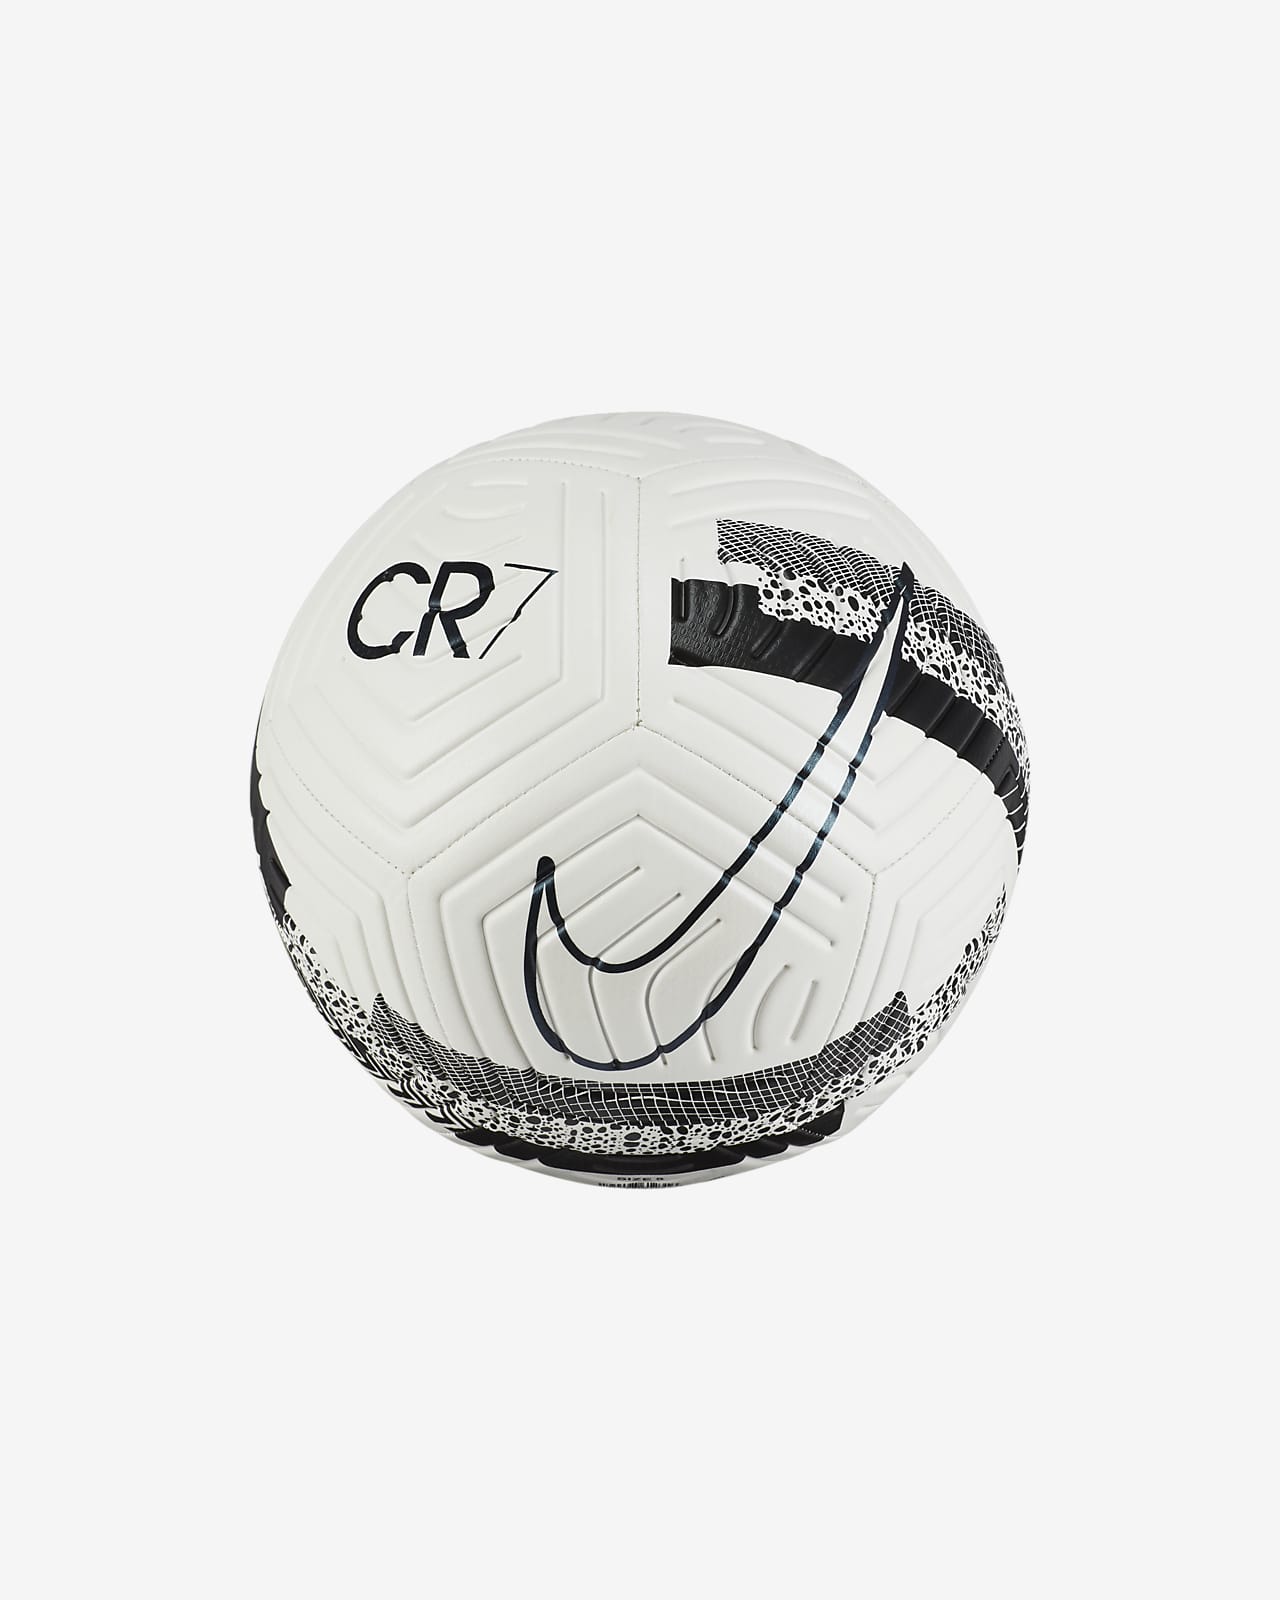 cr7 football size 5